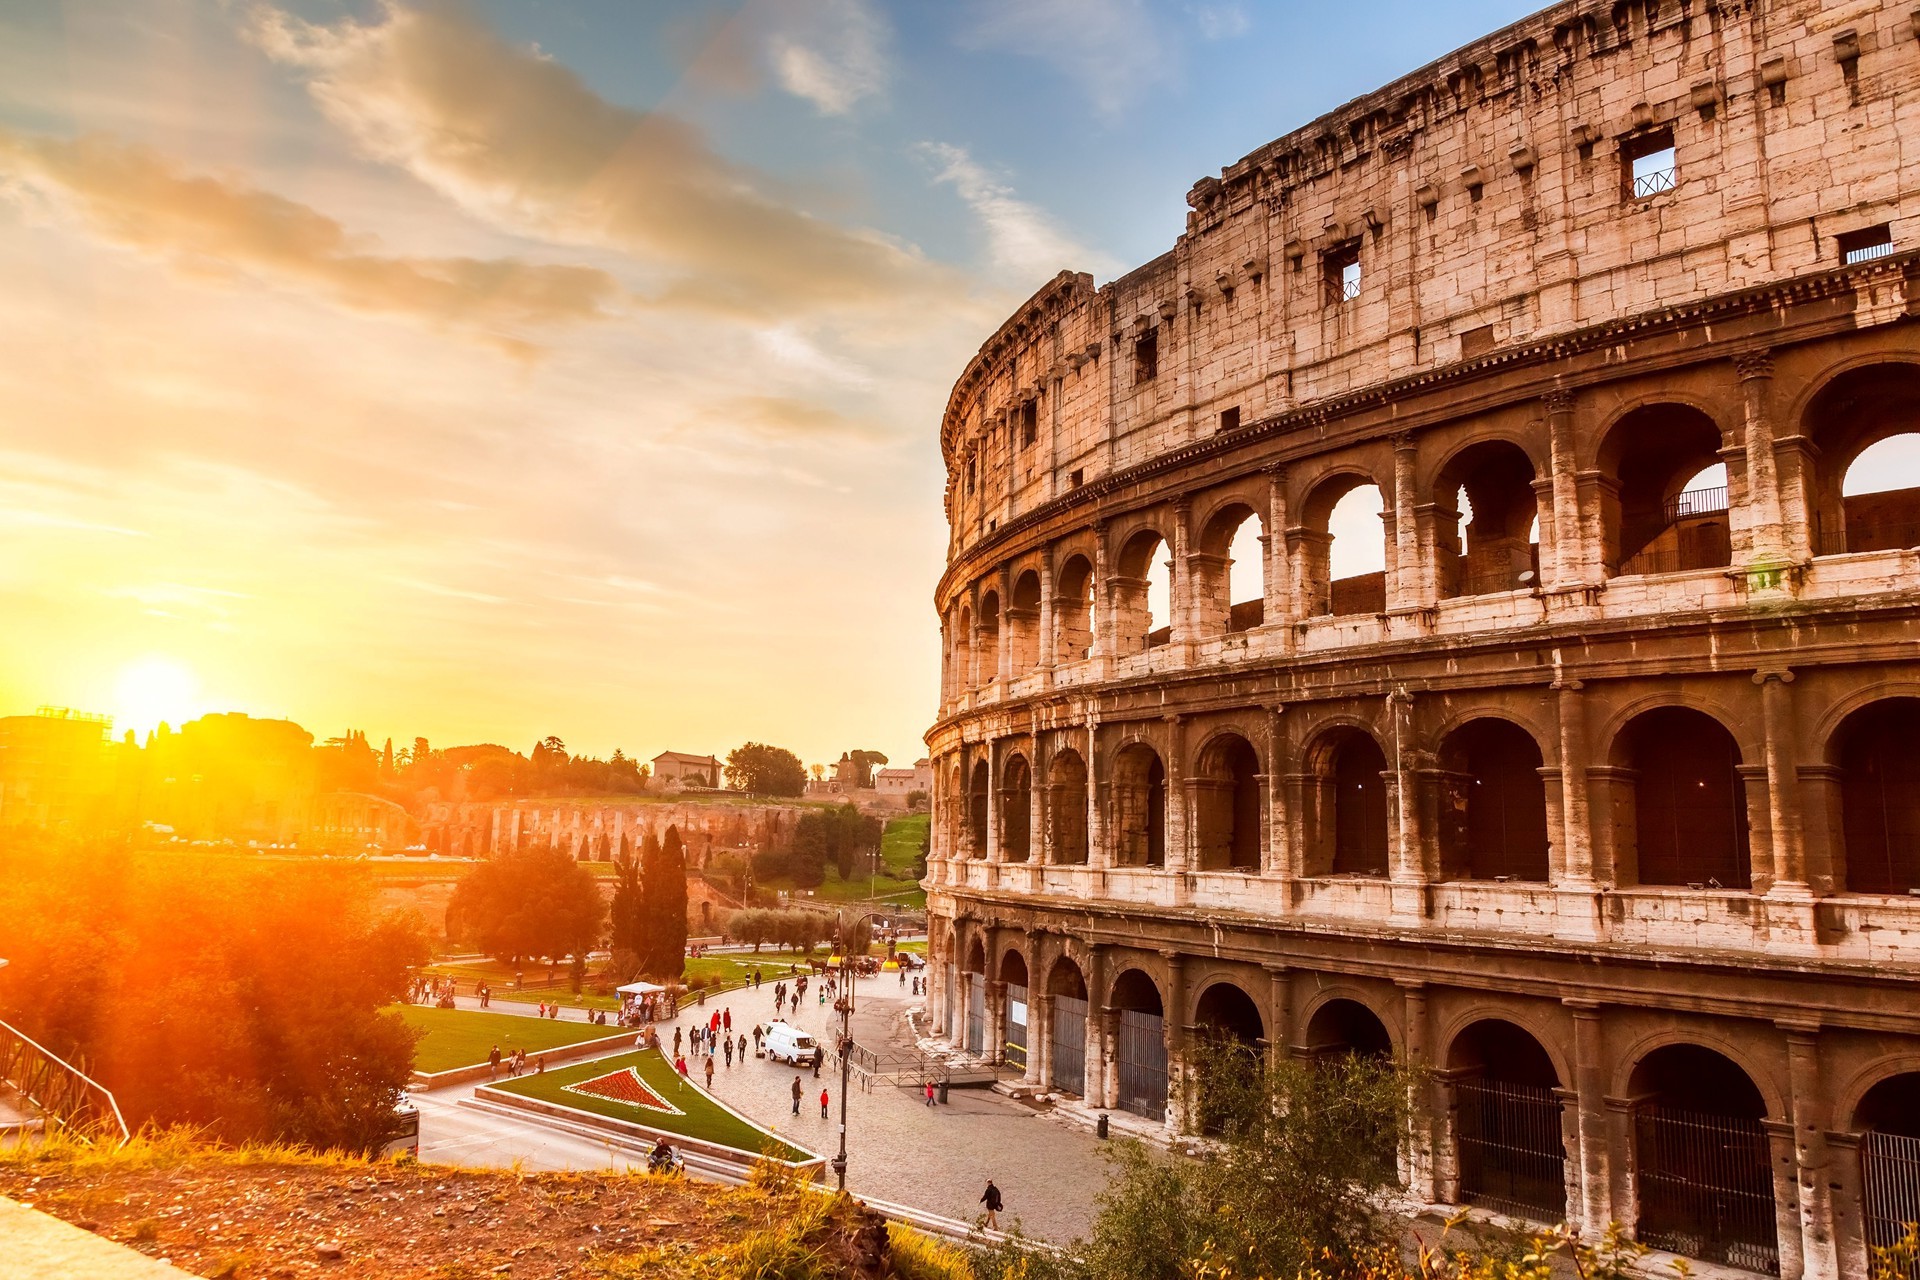 Städtetrip Europa: Kolosseum in Rom